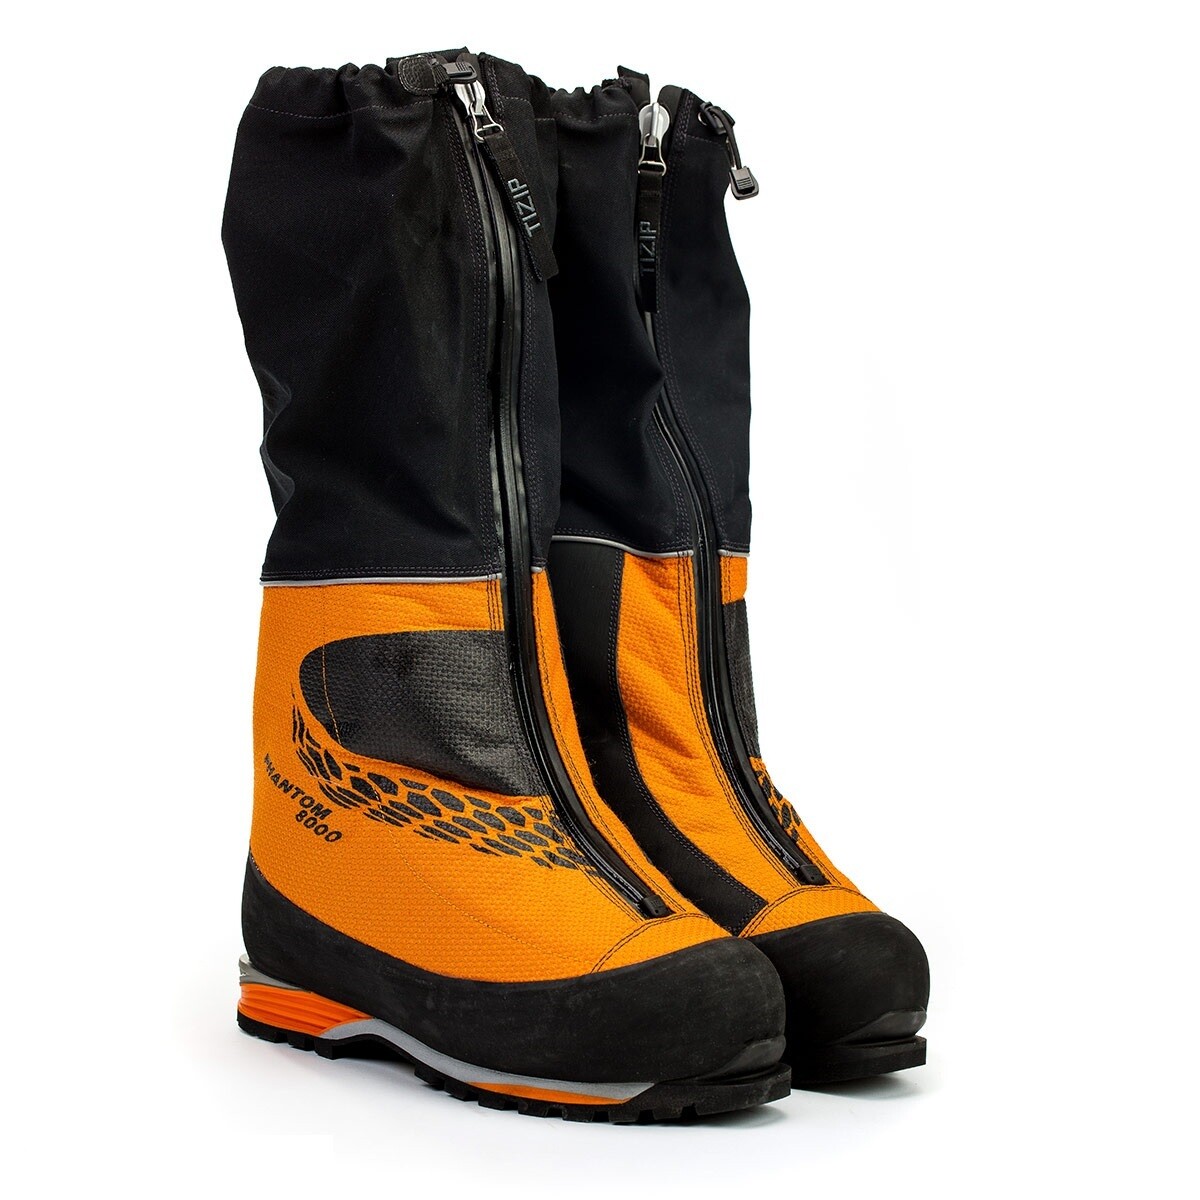 Scarpa Phantom 8000 - Высотные Премиум альпинистские ботинки для экстремальных условий.